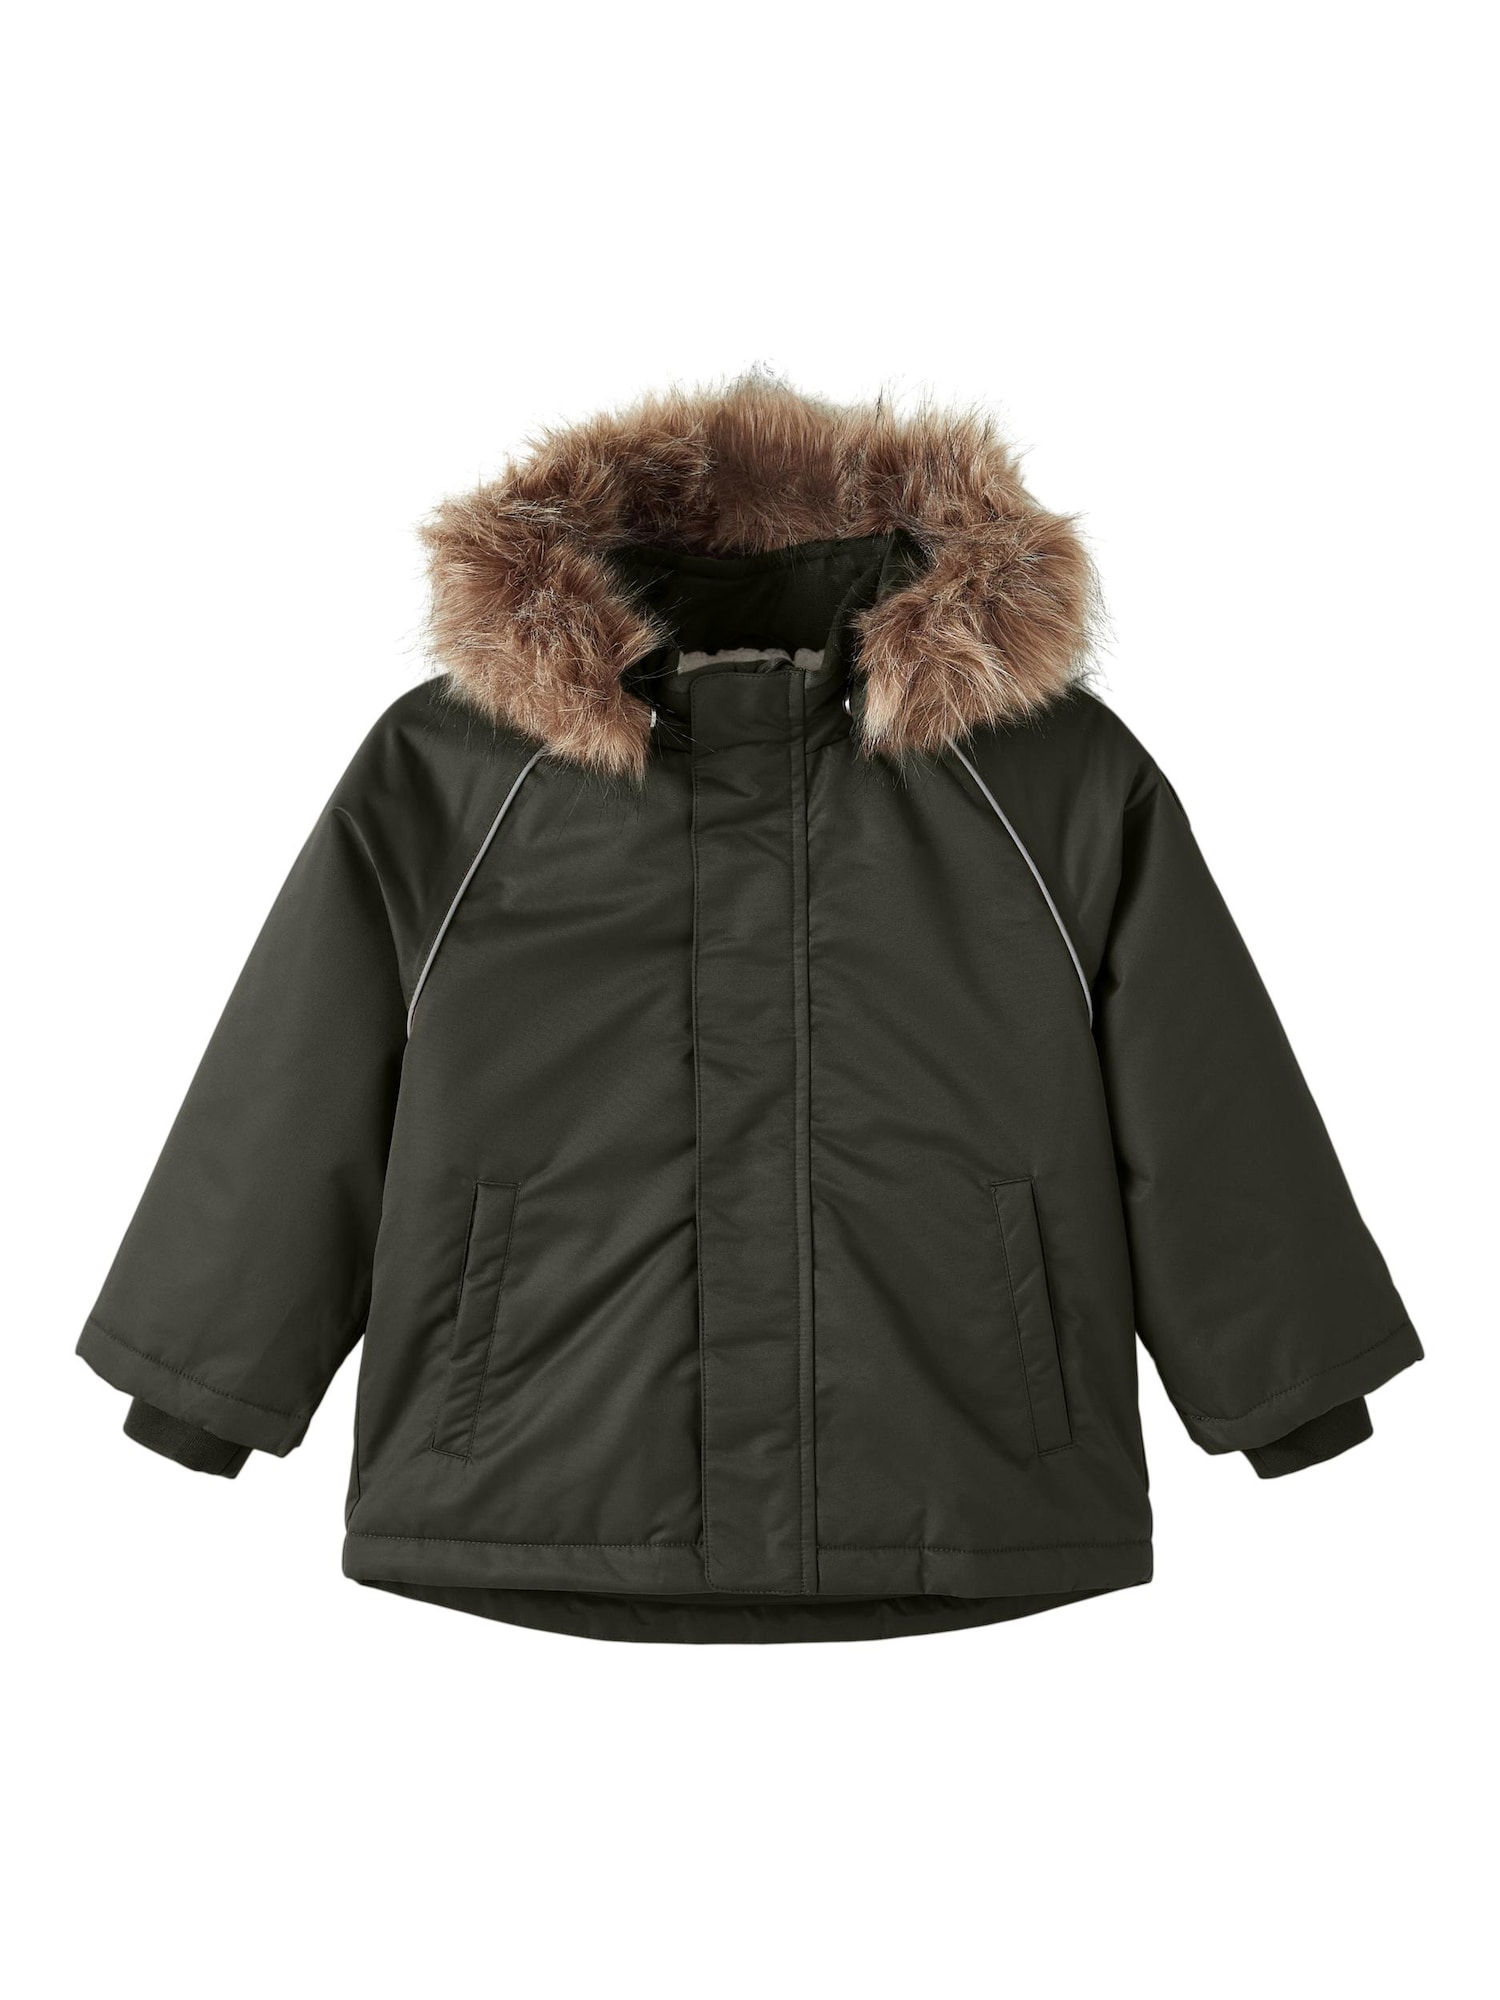 NAME IT Funkcionalna jakna 'SNOW 05'  svetlo rjava / temno zelena